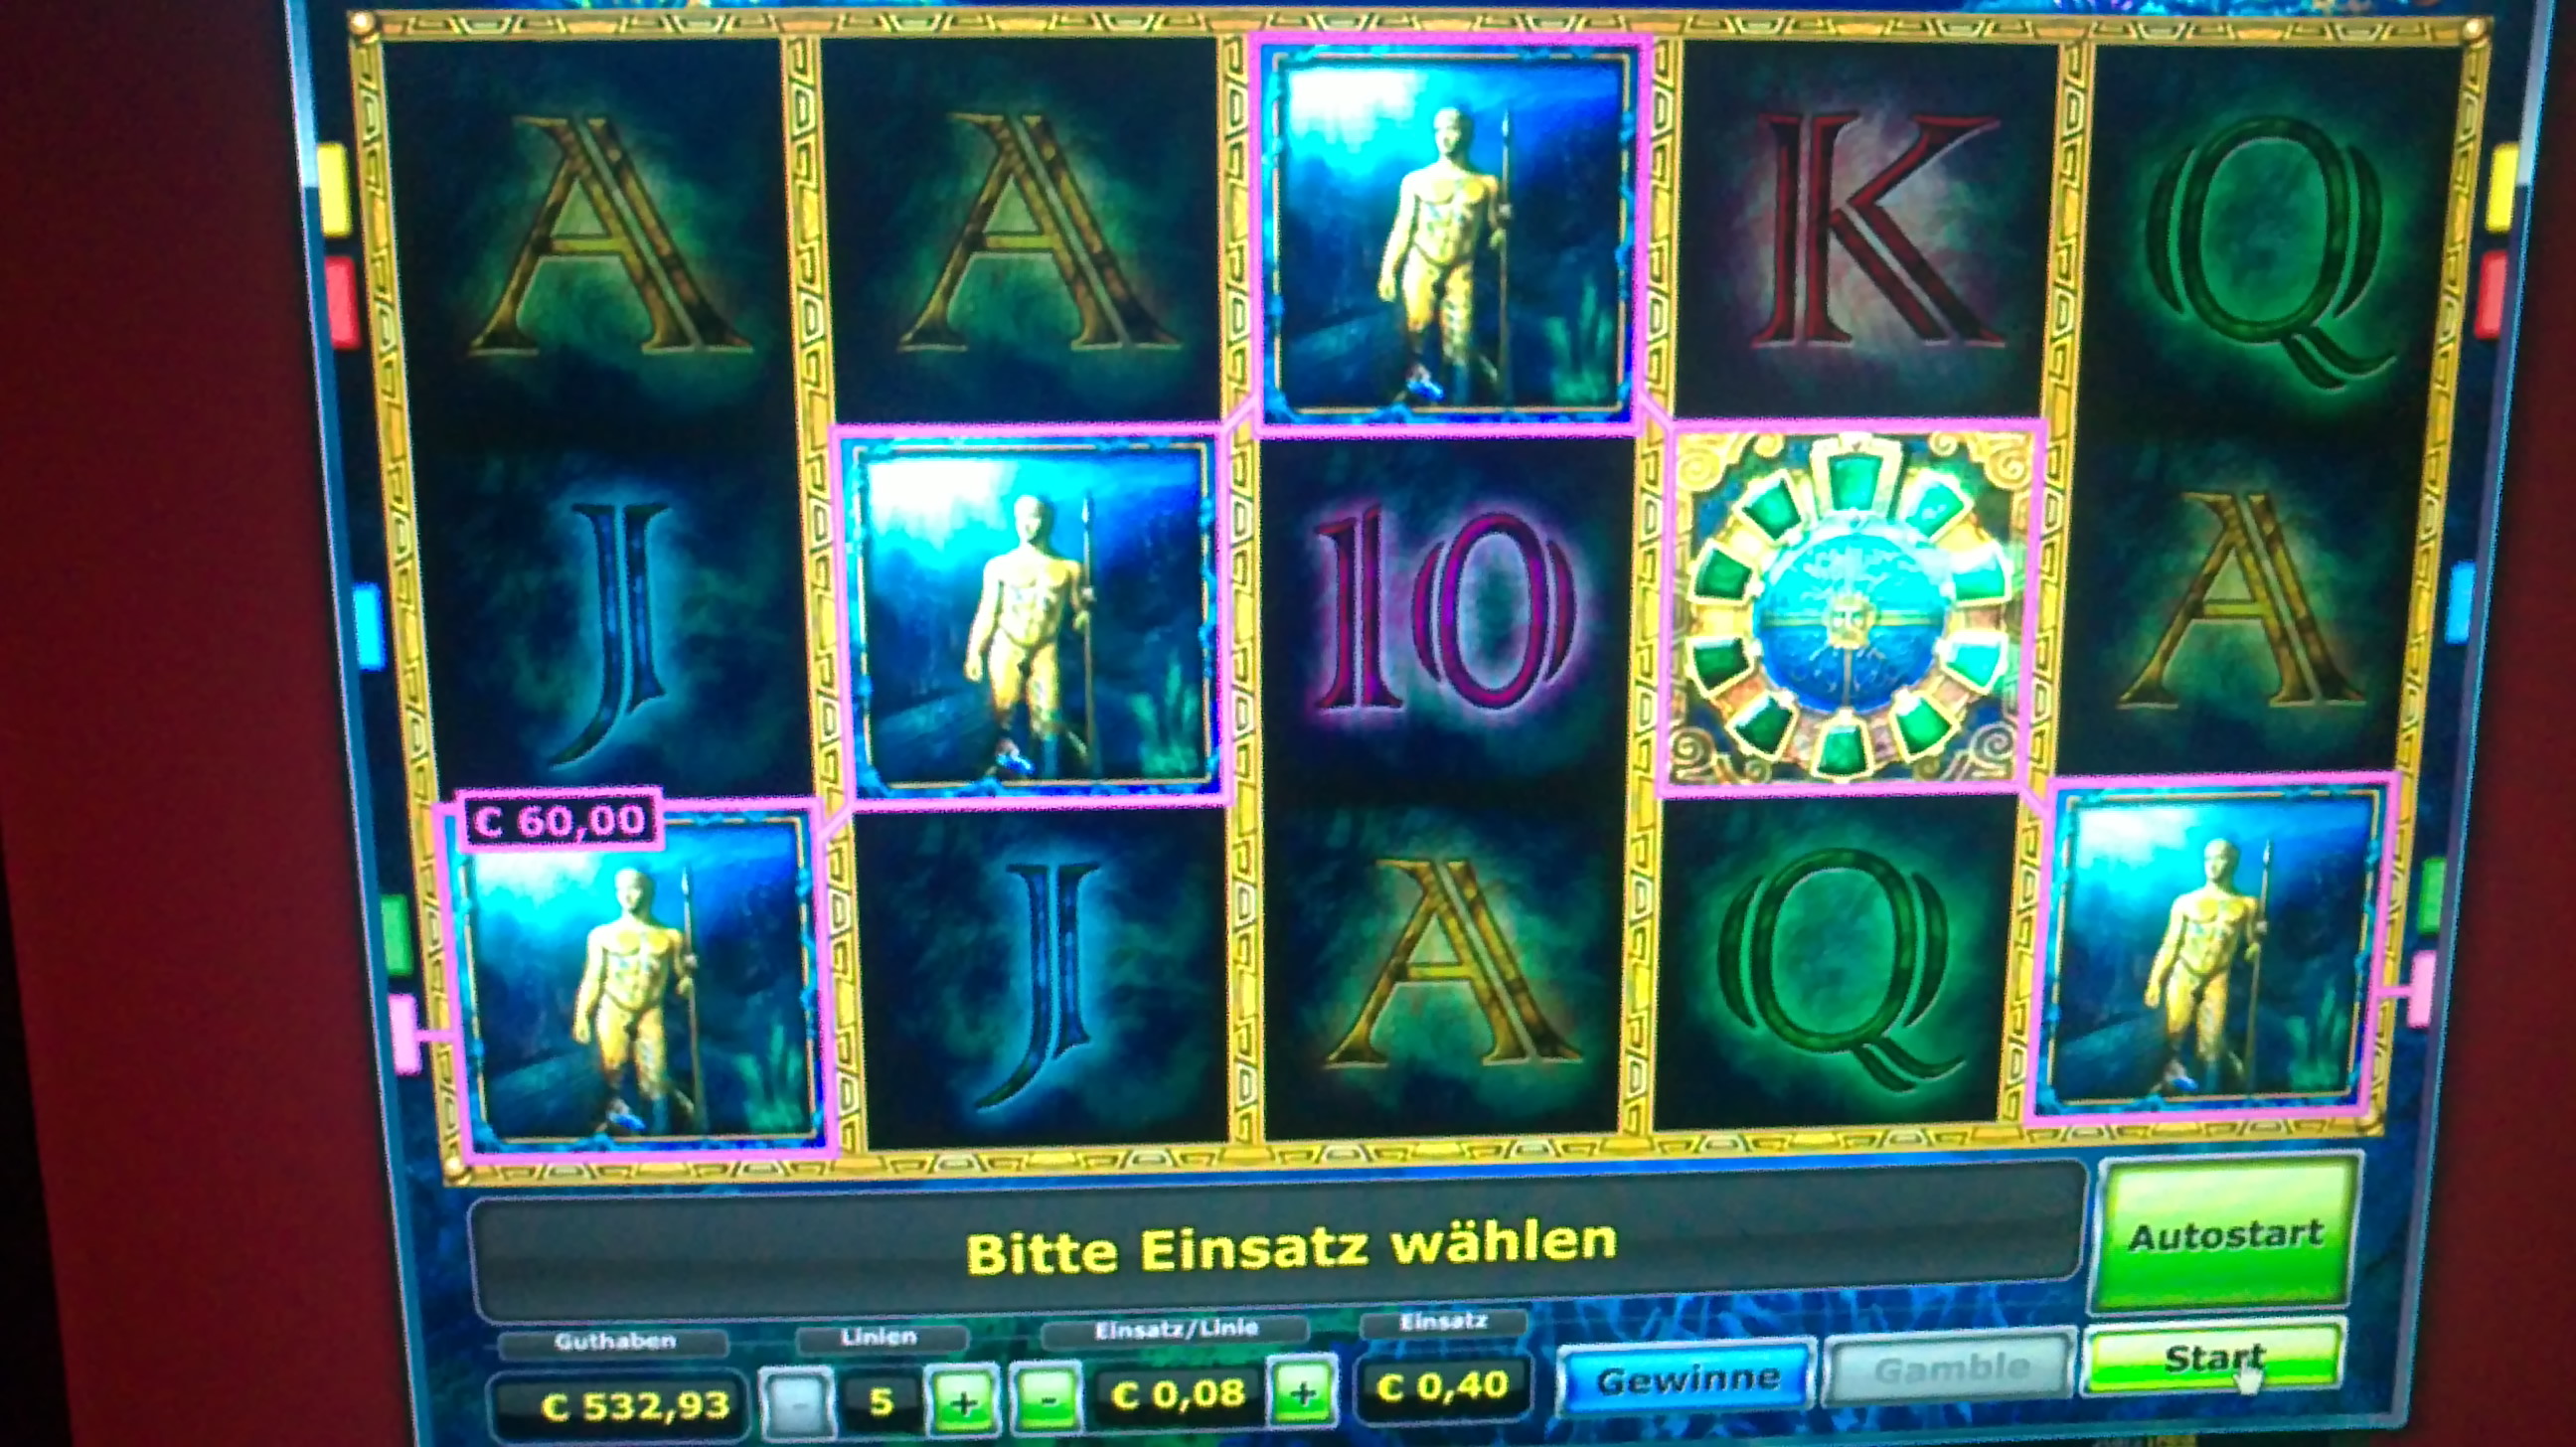 Spielvarianten Bei geldspielautomaten - 62514